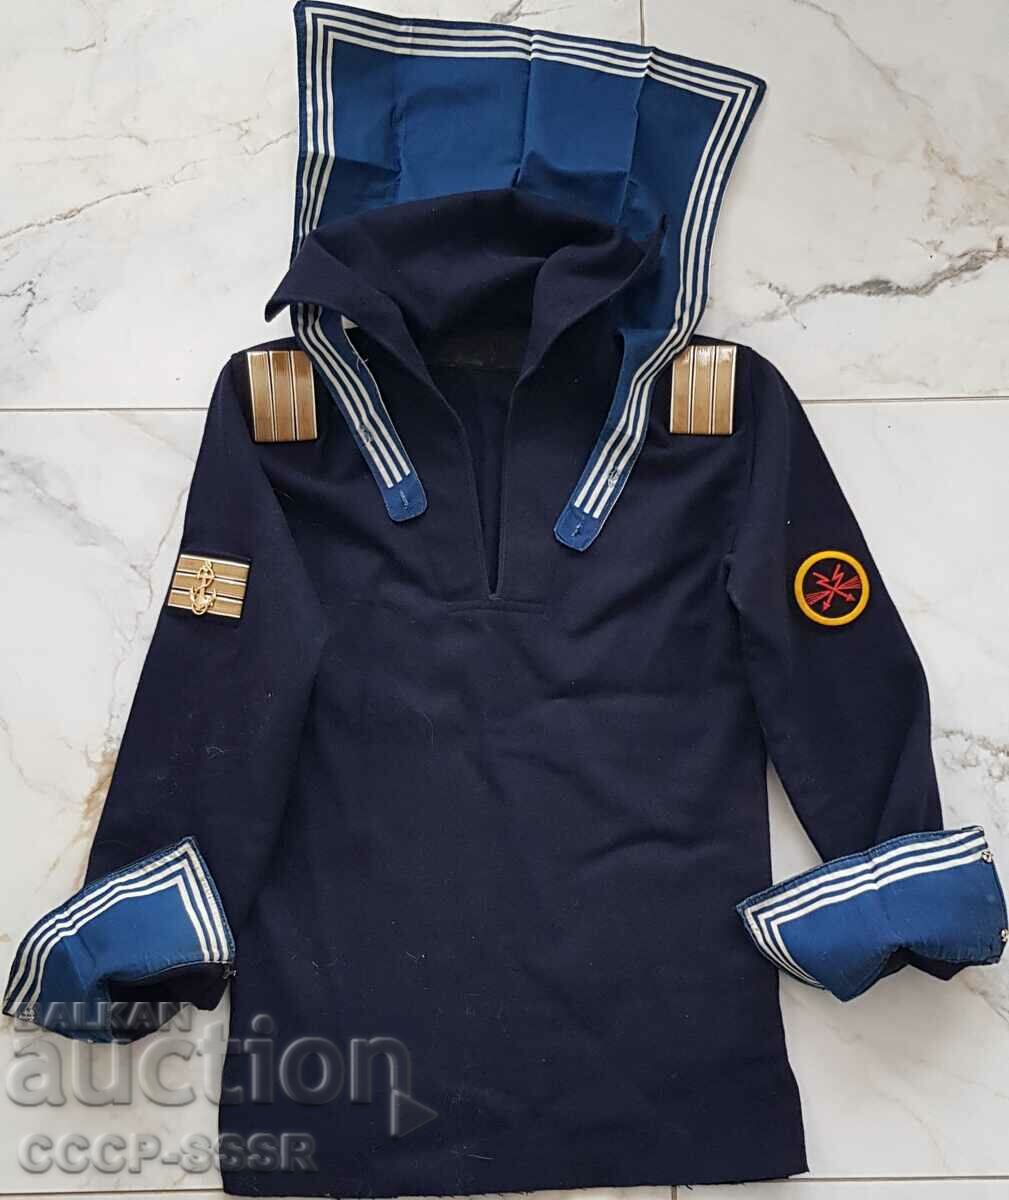 USSR, RUSSIA, sailor shirt, uniform